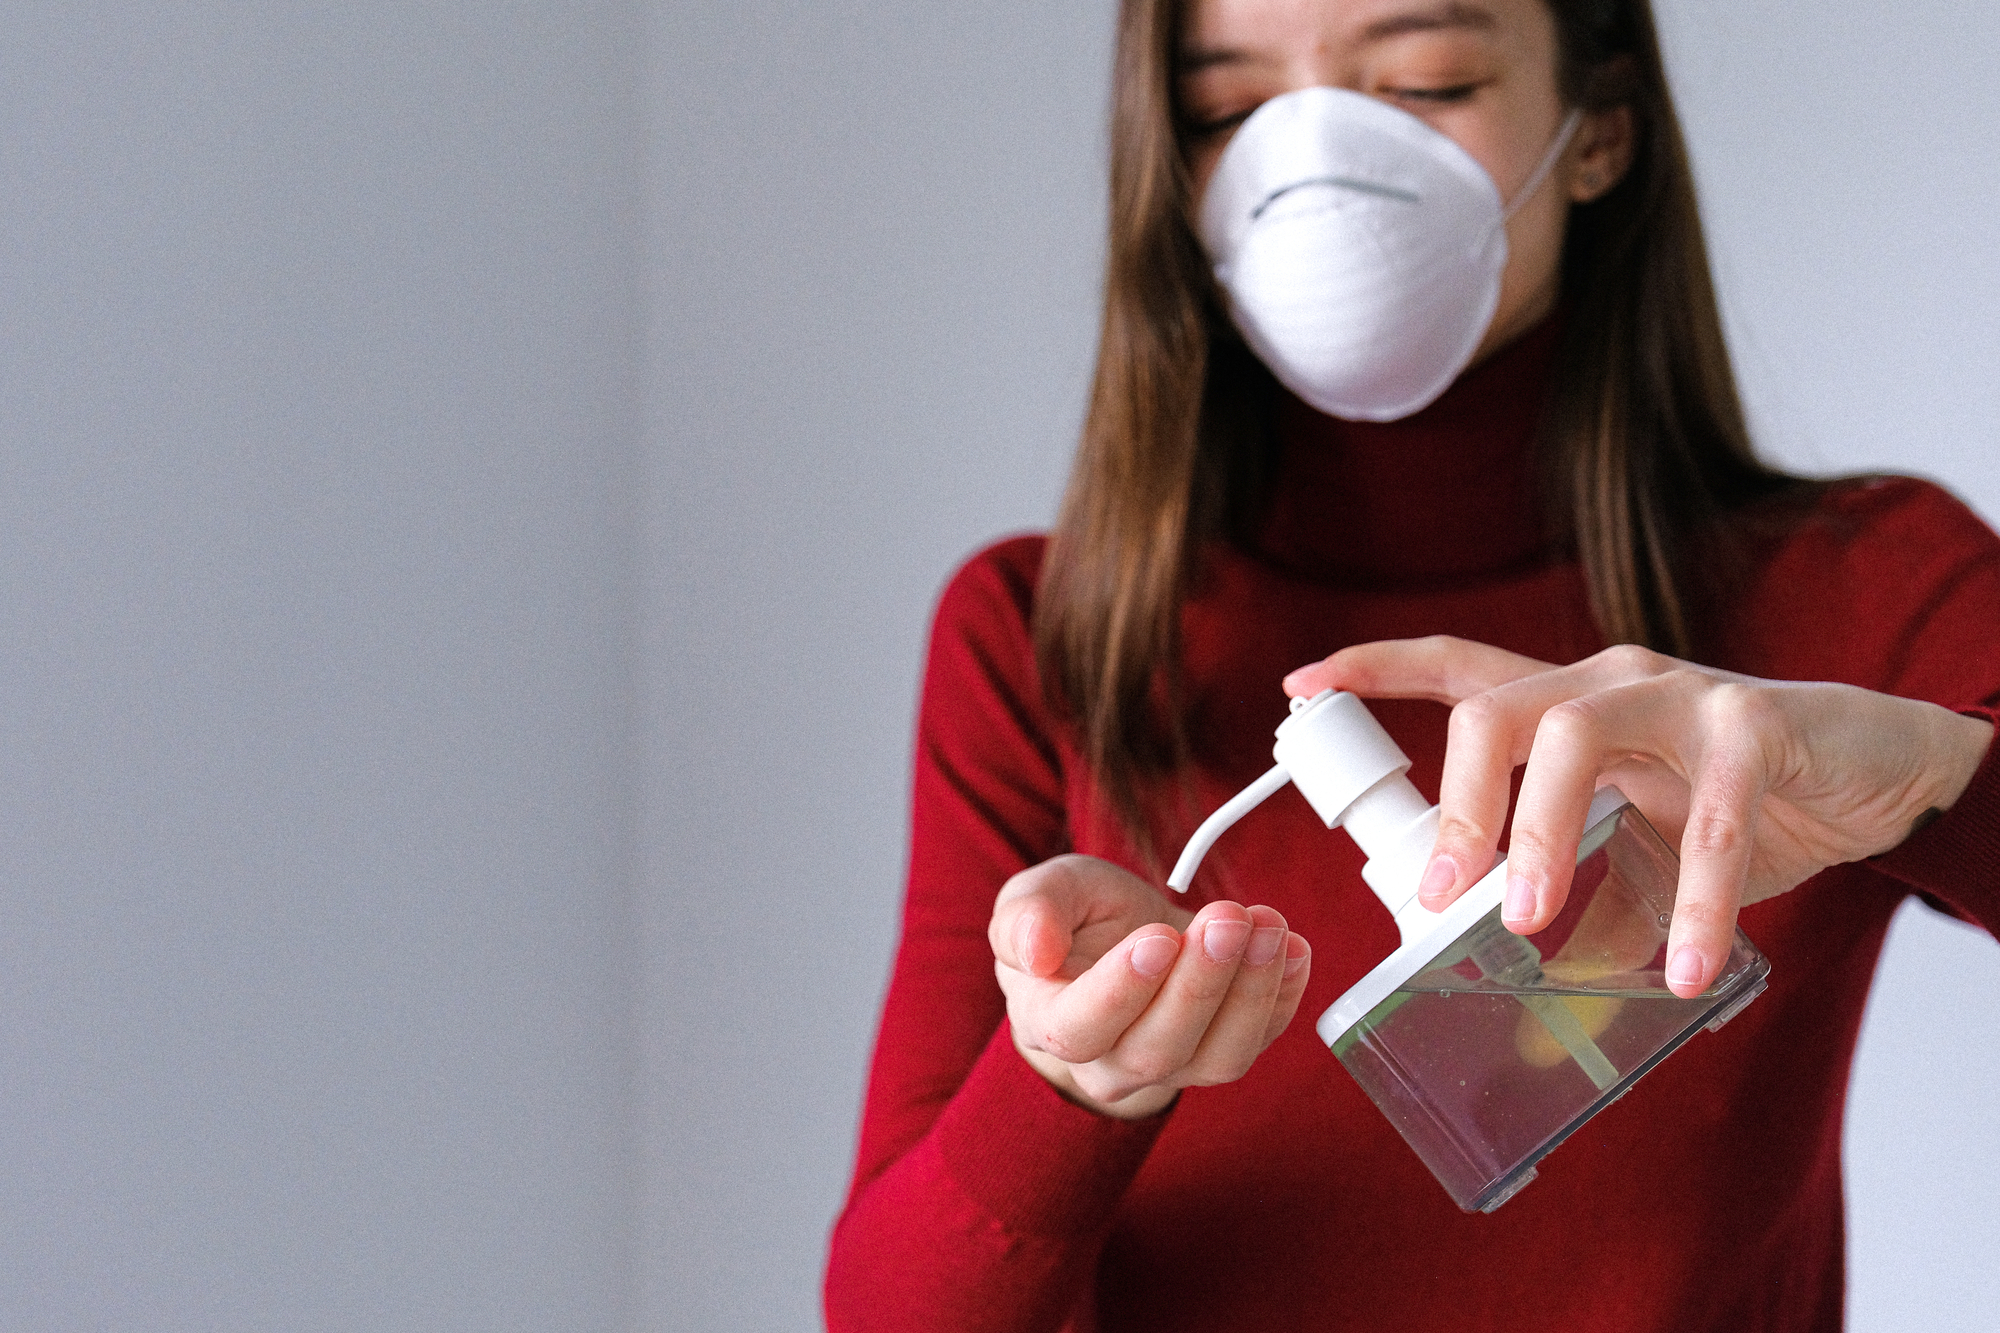 Woman wearing face mask applying hand sanitiser